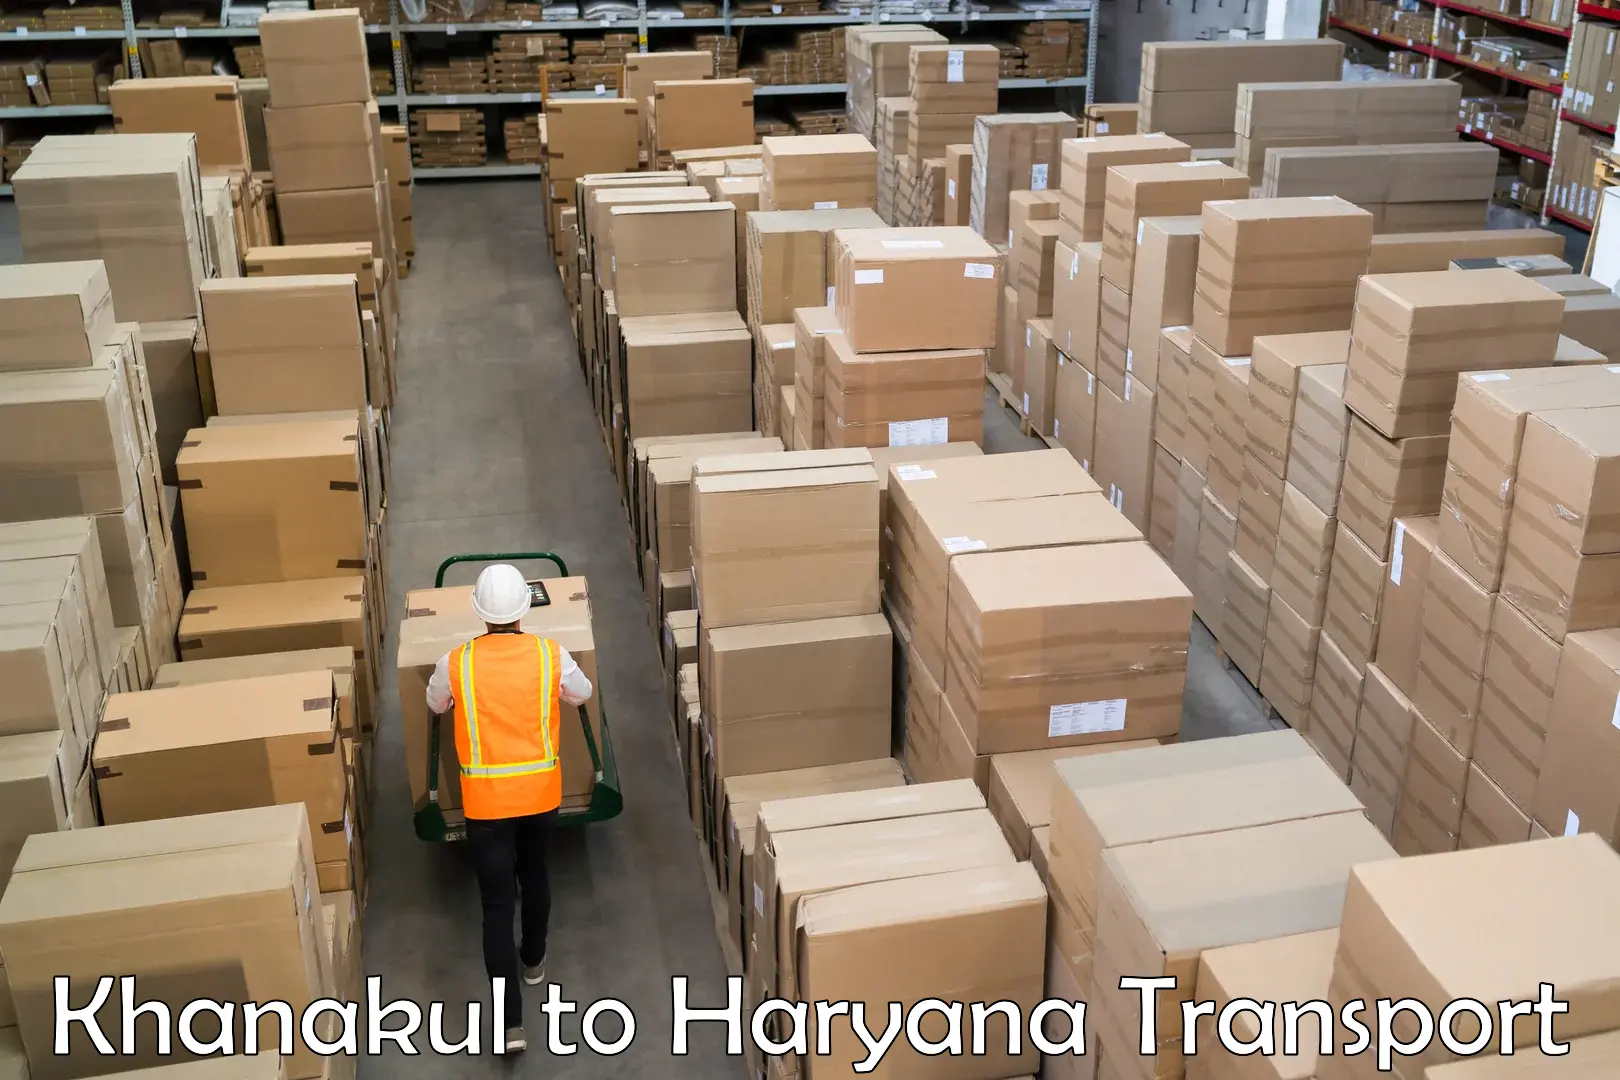 Shipping services Khanakul to Chaudhary Charan Singh Haryana Agricultural University Hisar